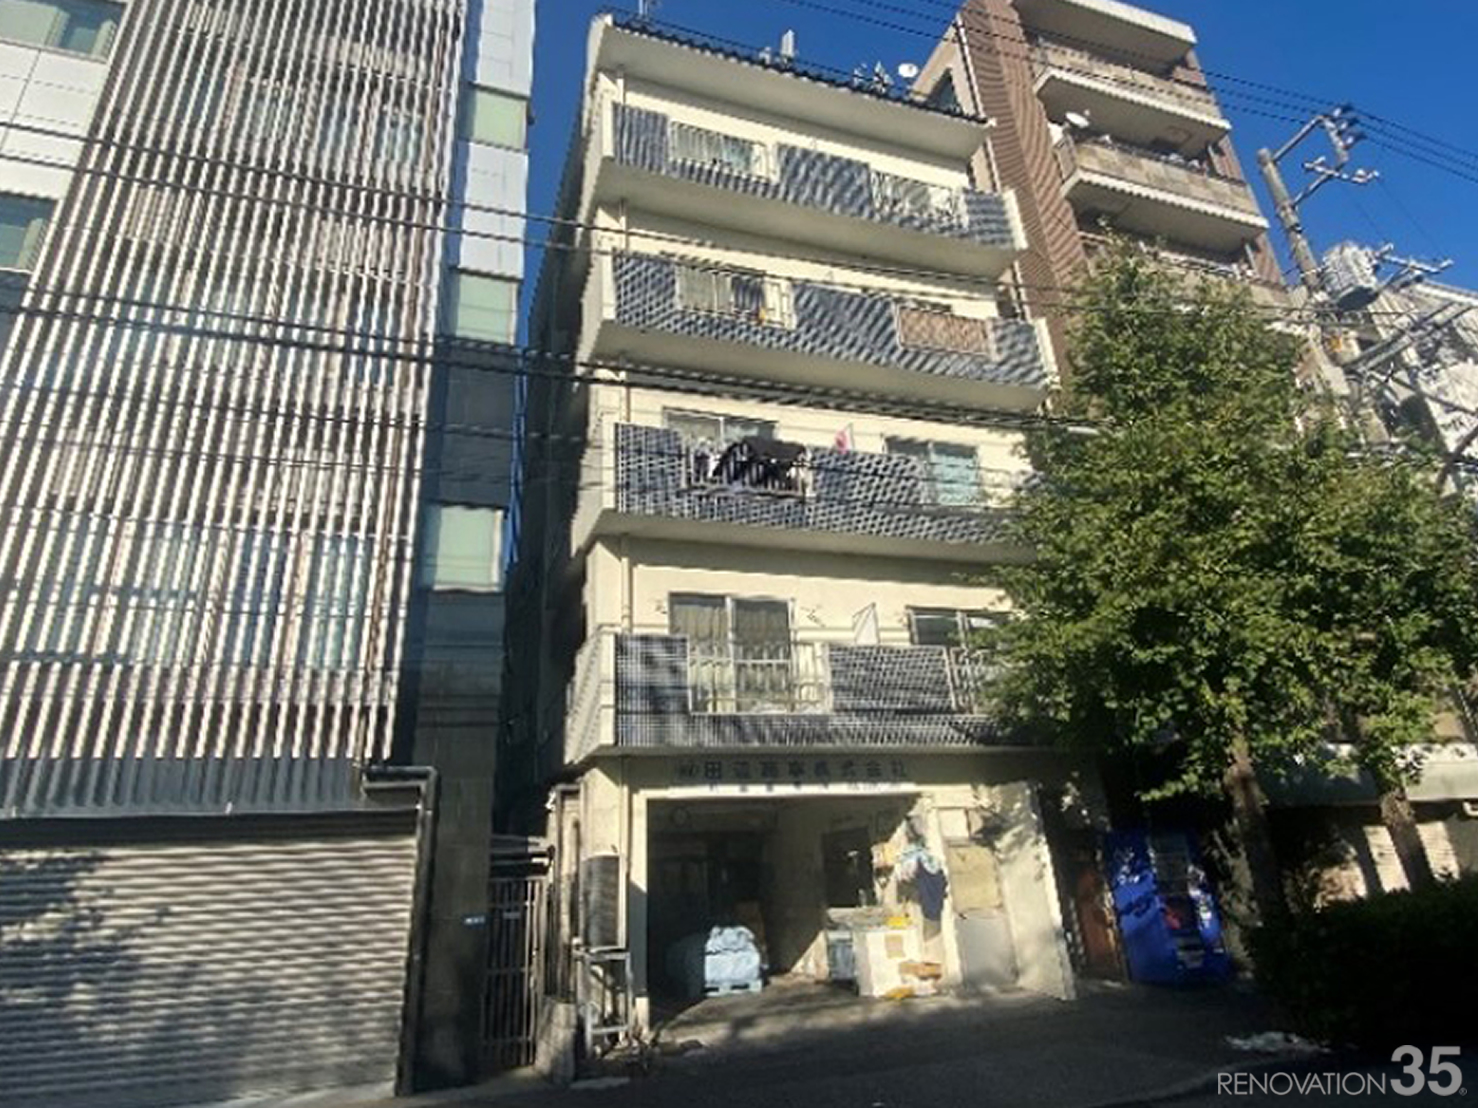 差し色のブラック、1DK X 8戸 + 店舗の空室対策リフォーム東京都新宿区、BEFORE1